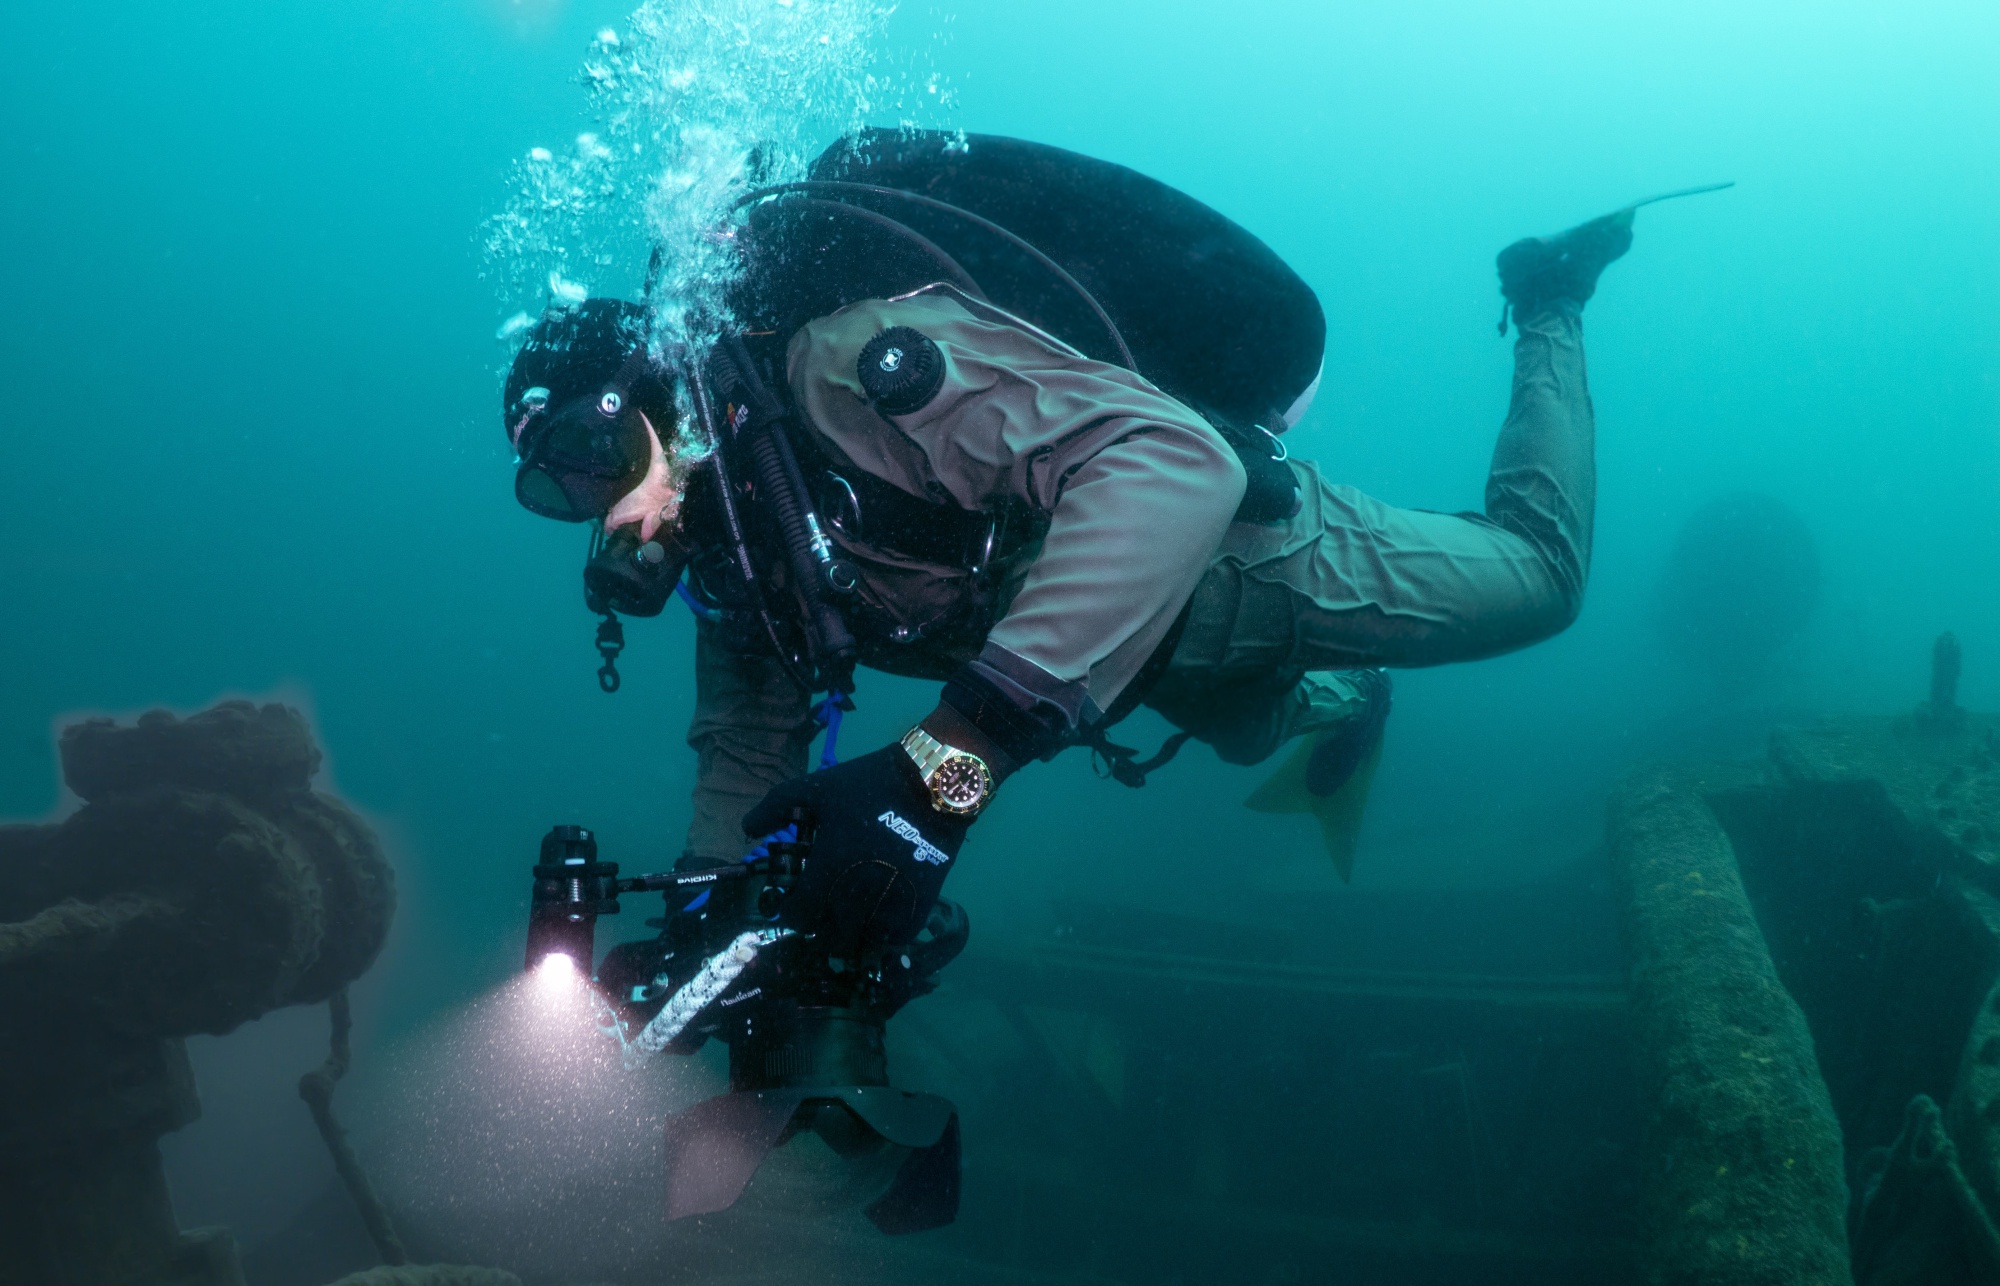 rolex submariner underwater